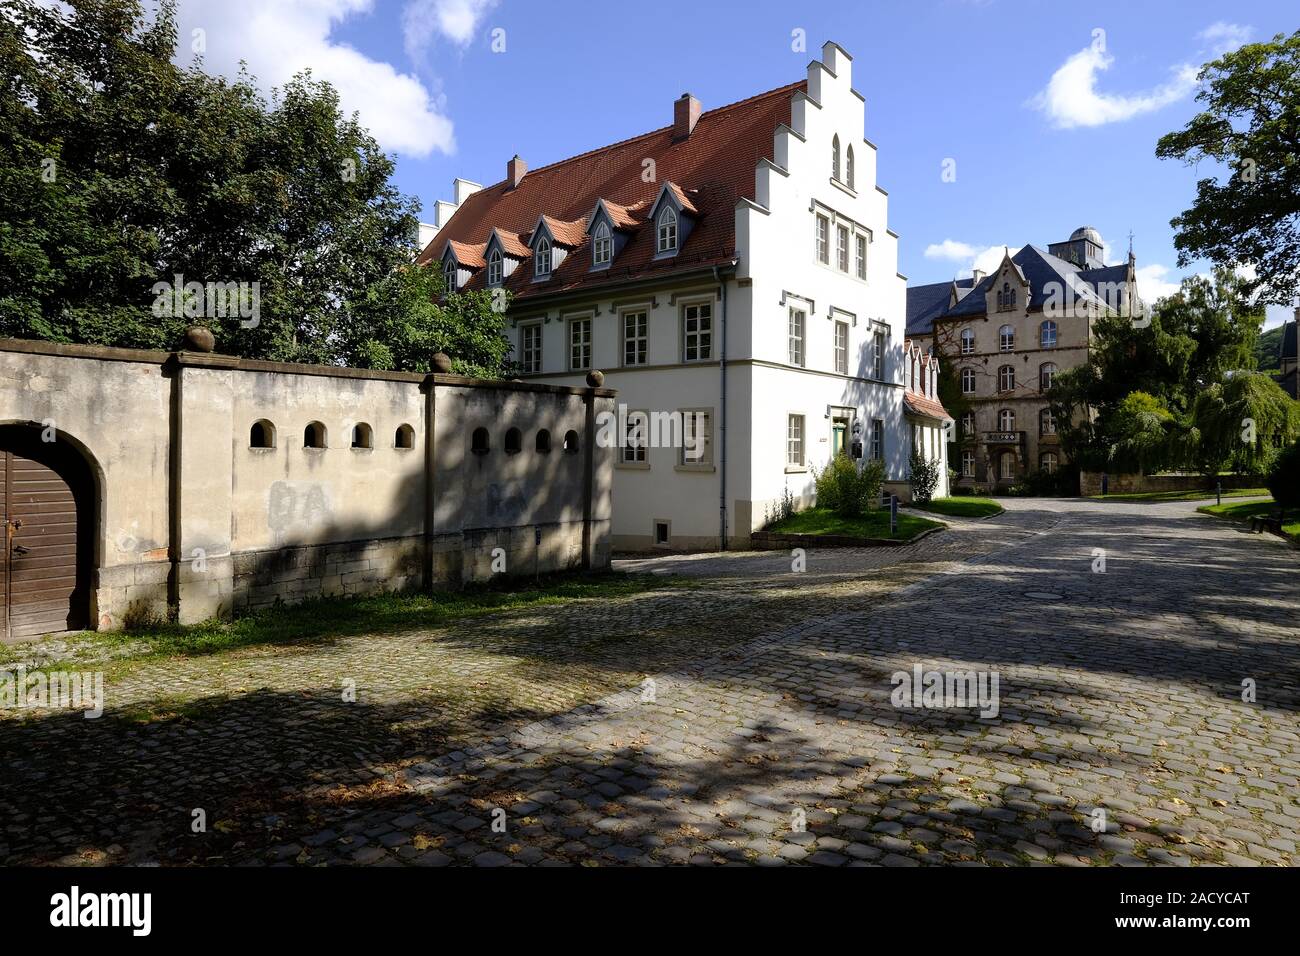 Kloster Schulpforte with monastery garden in Schulpforte near Naumburg on the Romanesque Road, Burgenlandkreis, Saxony-Anhalt, G Stock Photo